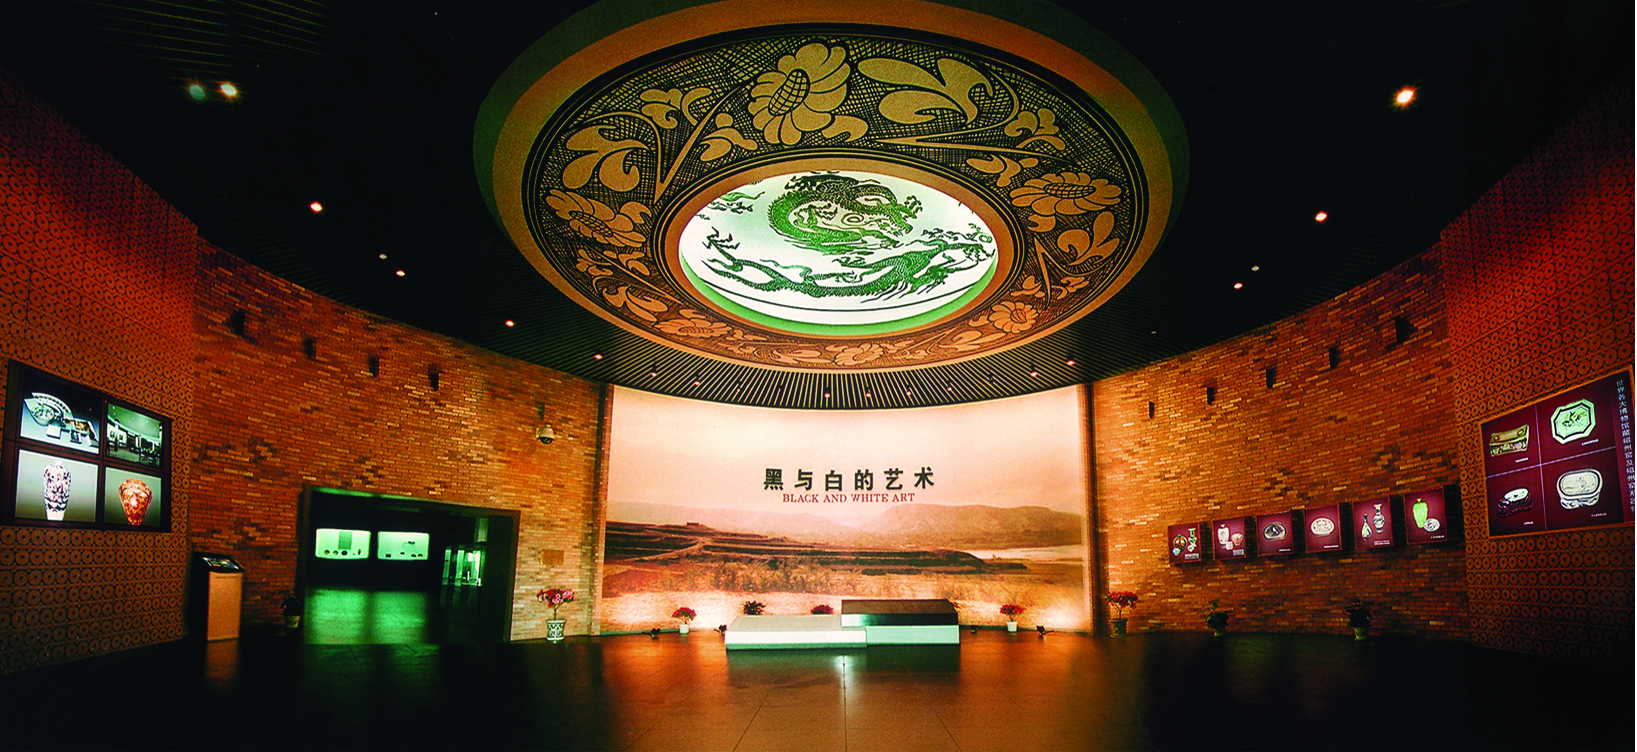 峰峰磁州窑历史博物馆图片